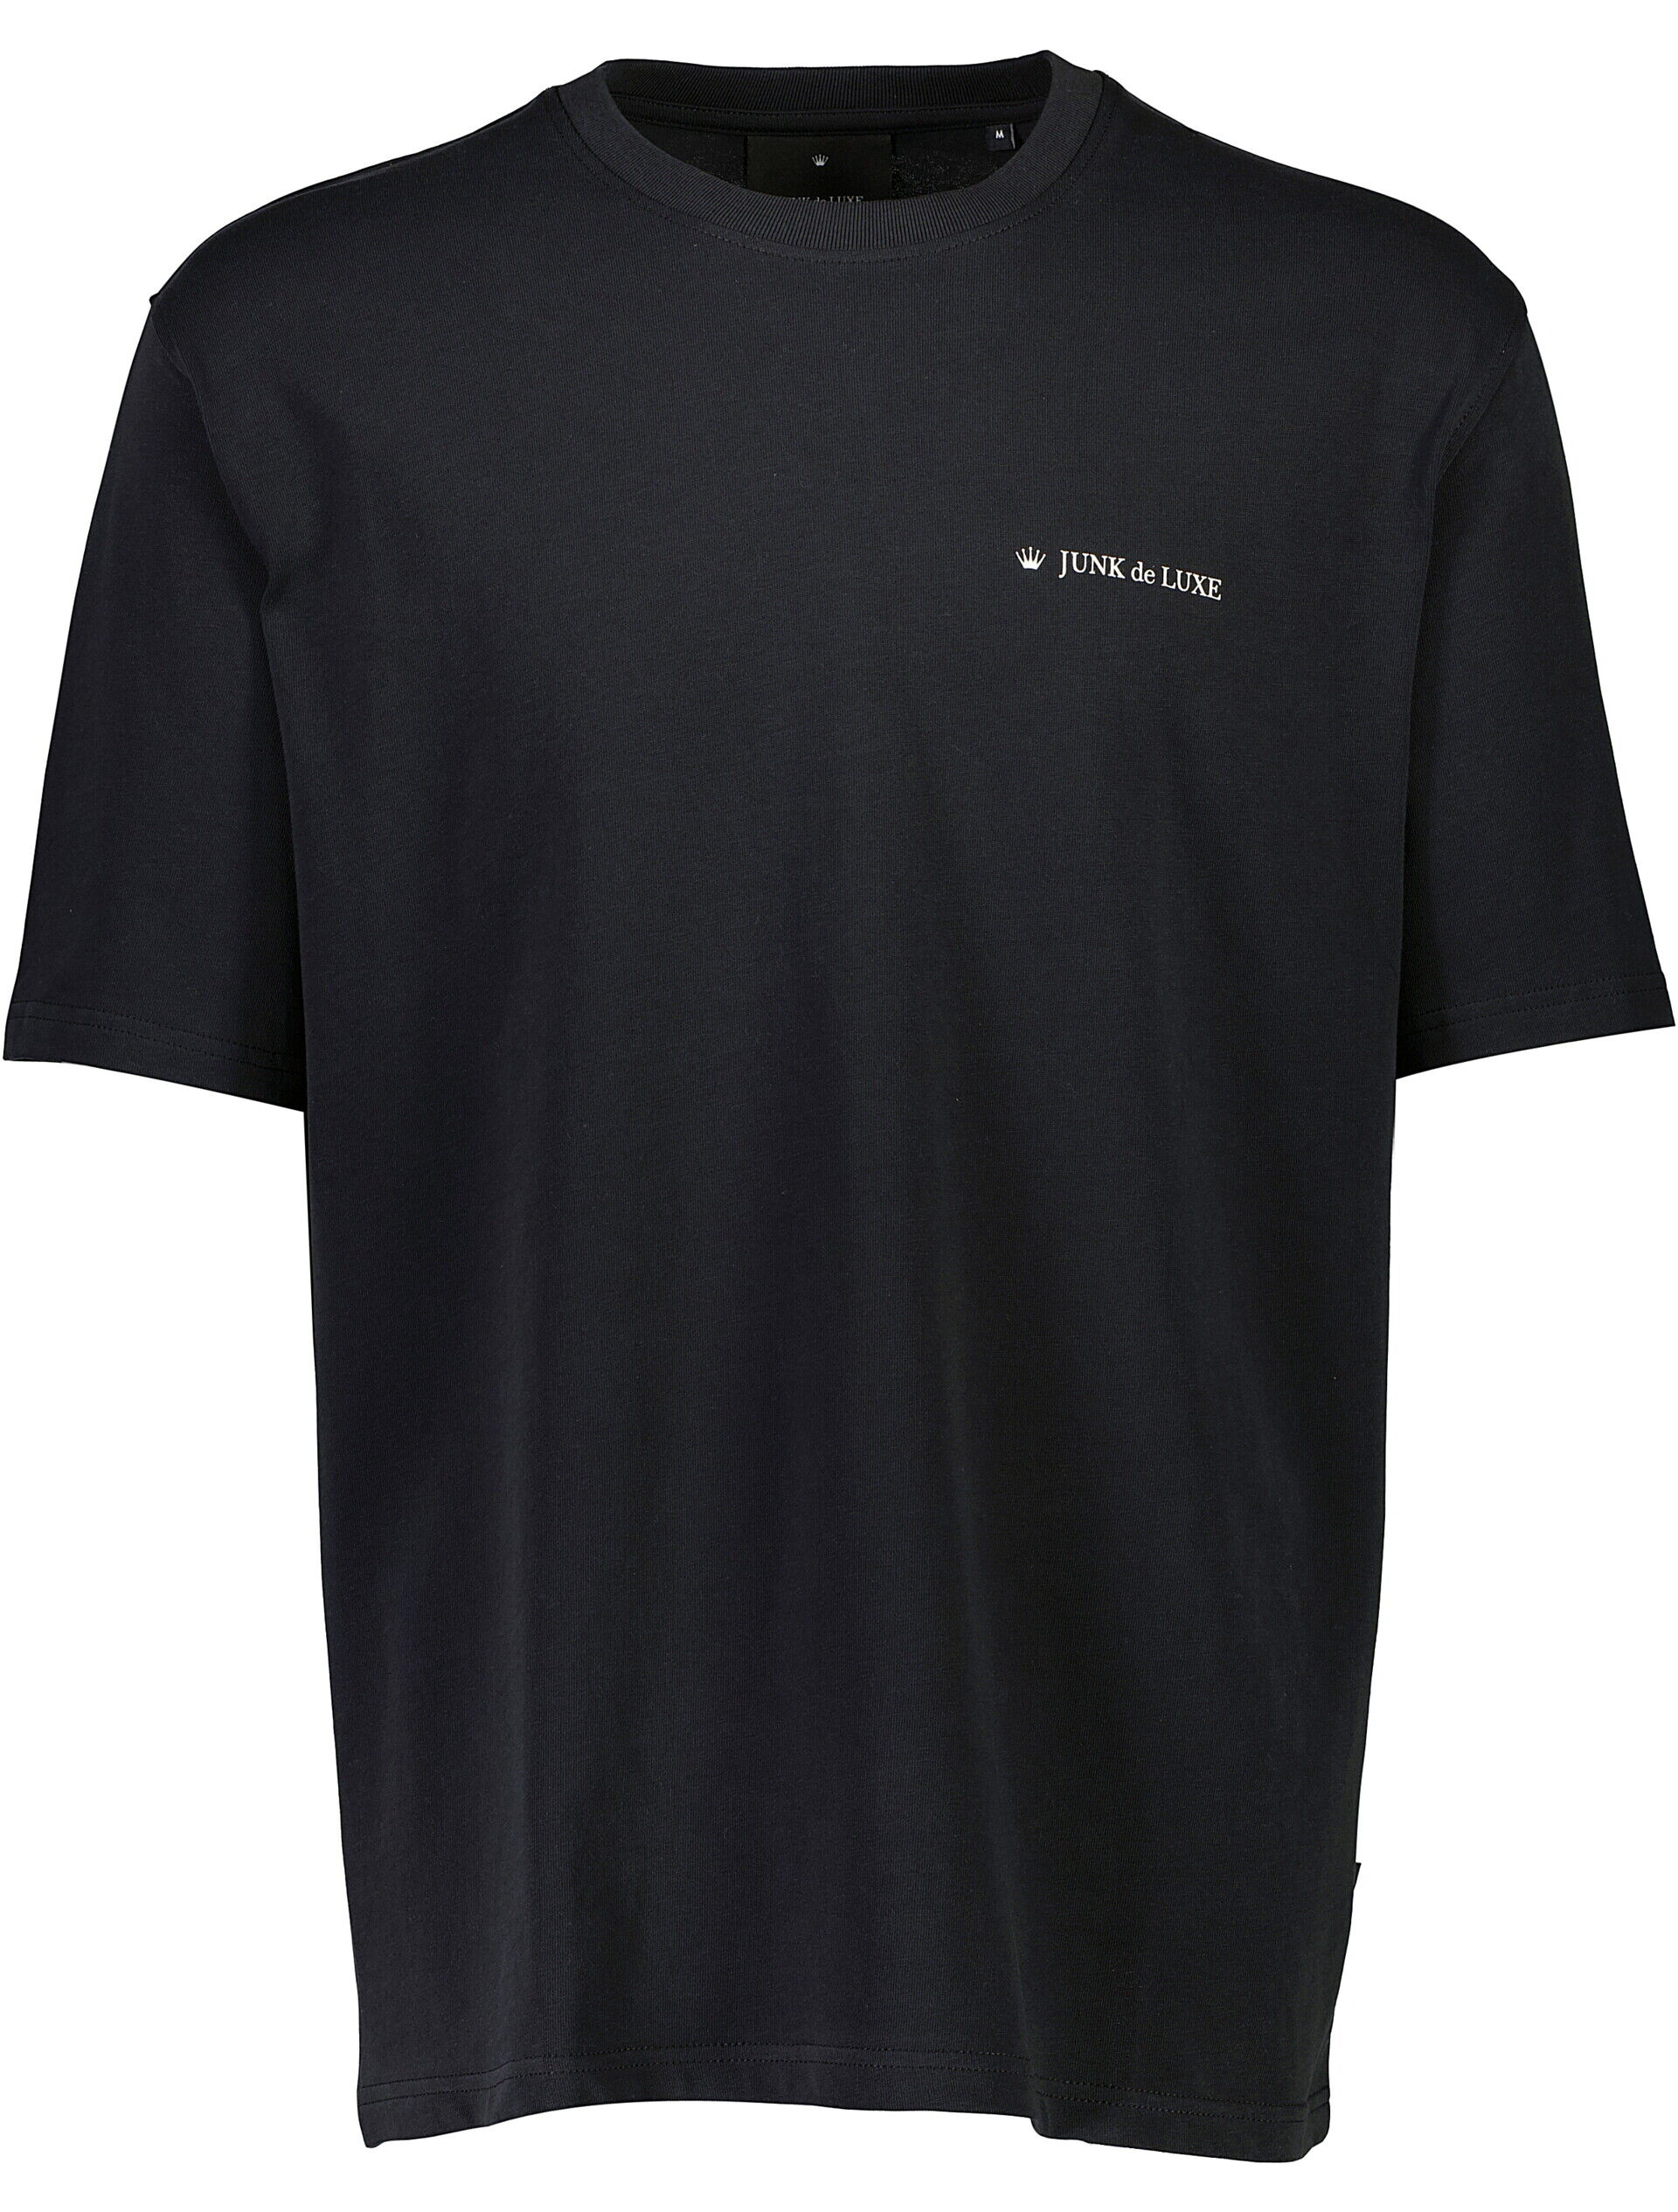 Junk de Luxe  T-shirt Sort 60-455019